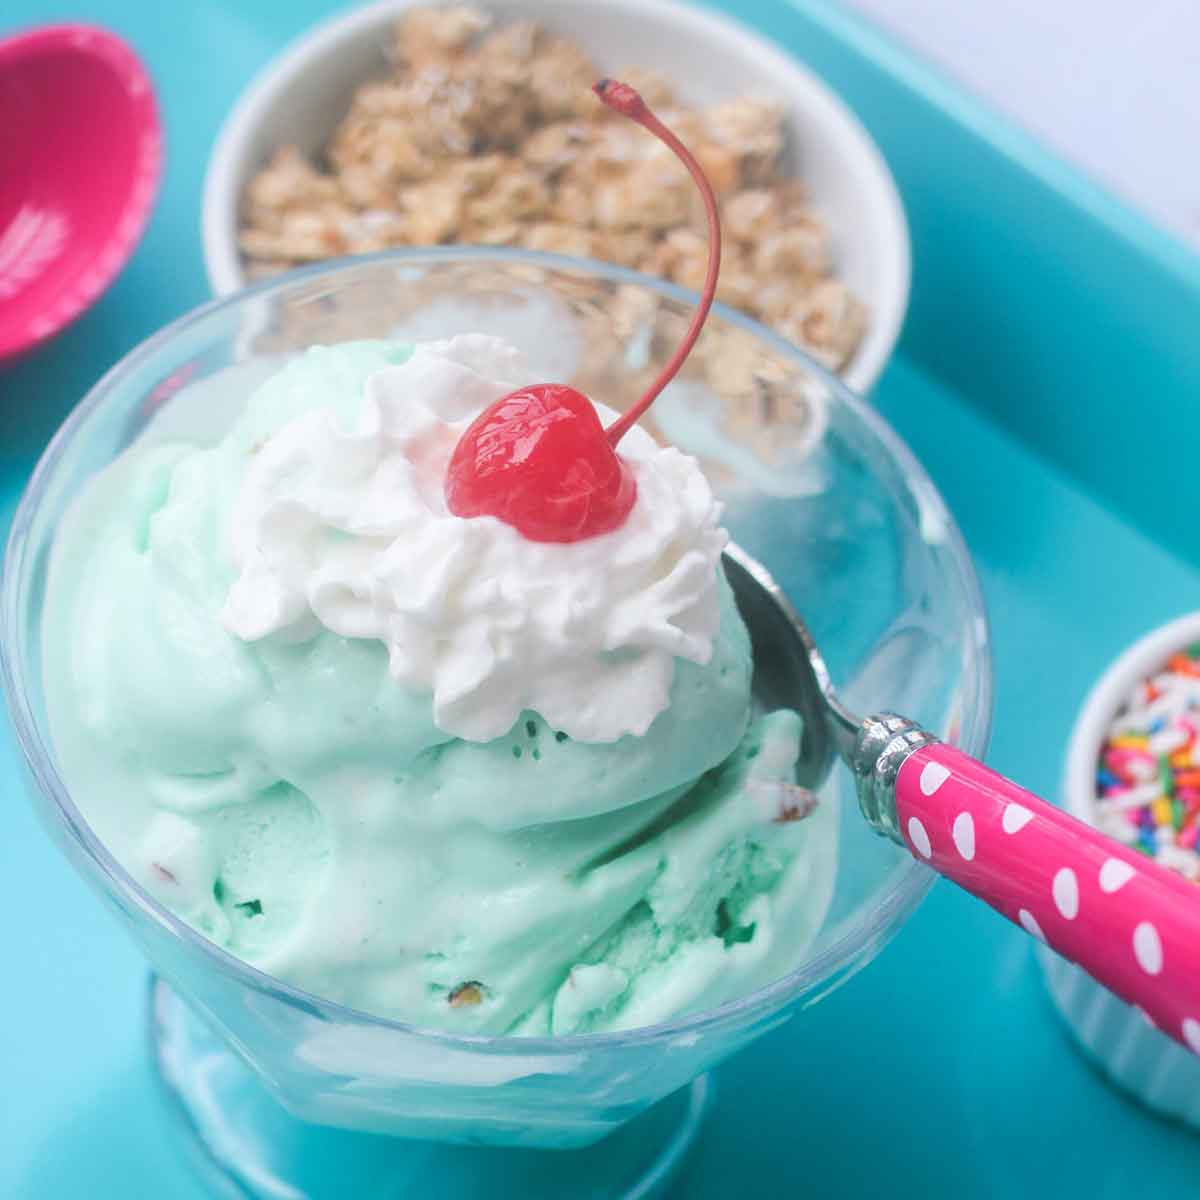 Homemade Pistachio Ice Cream Featured Image